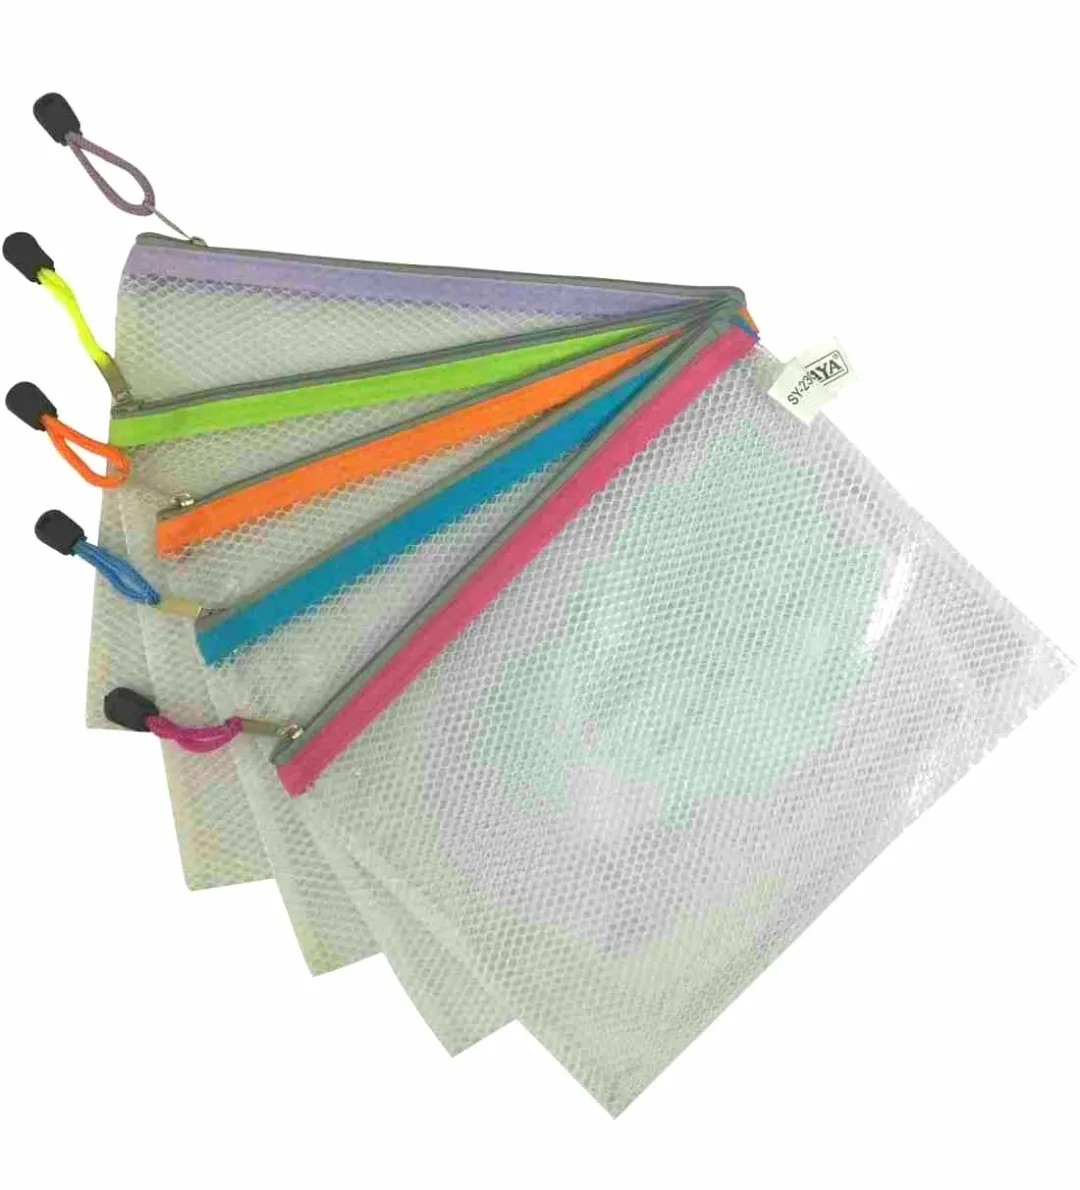 Saya PVC Zipper Bag, SY - 2305, Nylon Zip Bag, 1 Pack of 1 Bag